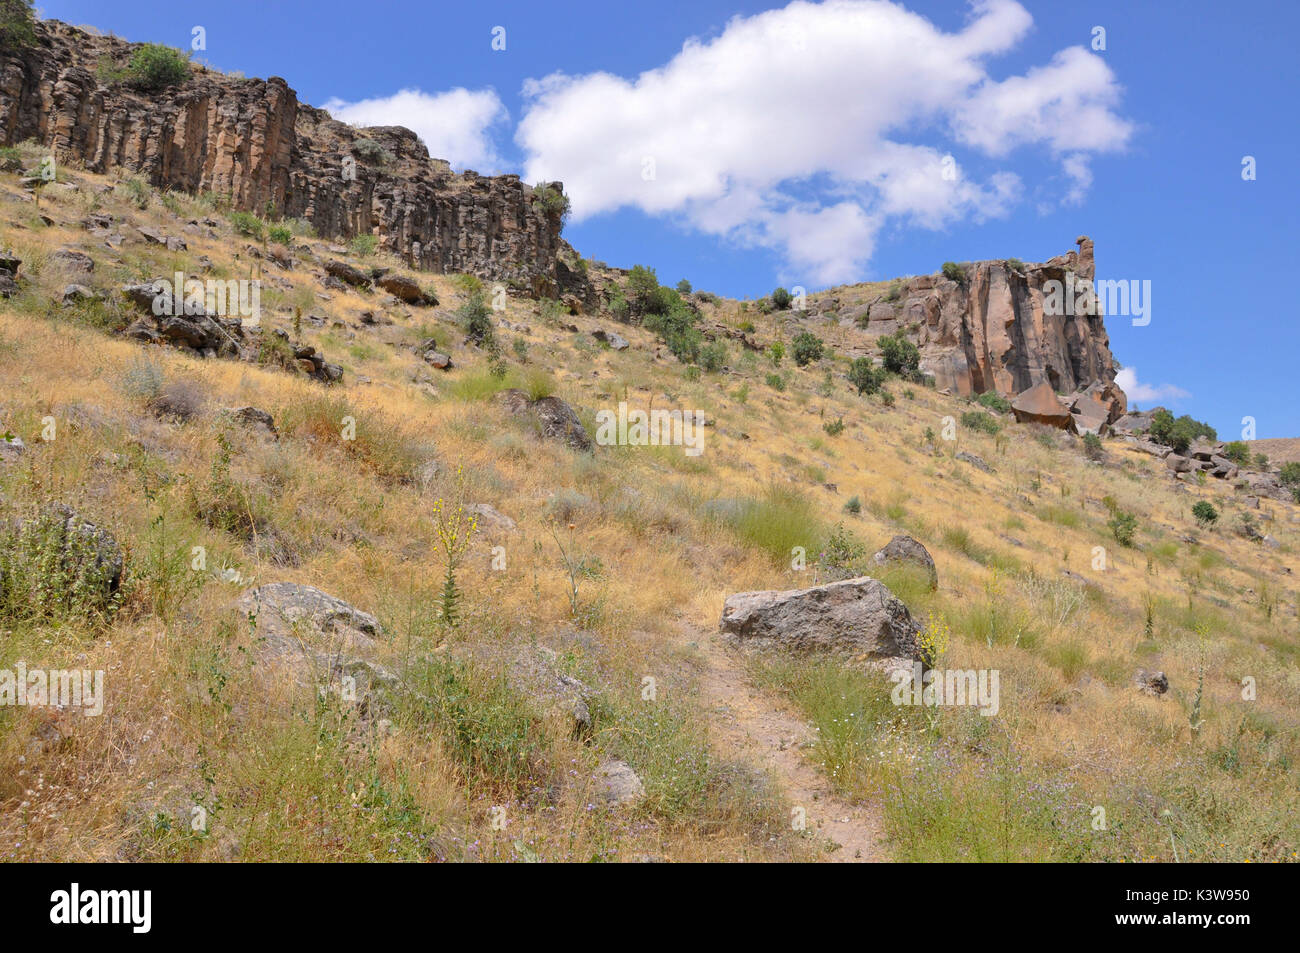 El Valle de Ihlara en Turquía, Kappadokia es largo, 14 km de Ihlara de Salime. Este valle es la profundidad de 100-150m y a lo largo de él hay tumbas, iglesias y viviendas excavadas en la roca. Foto de stock